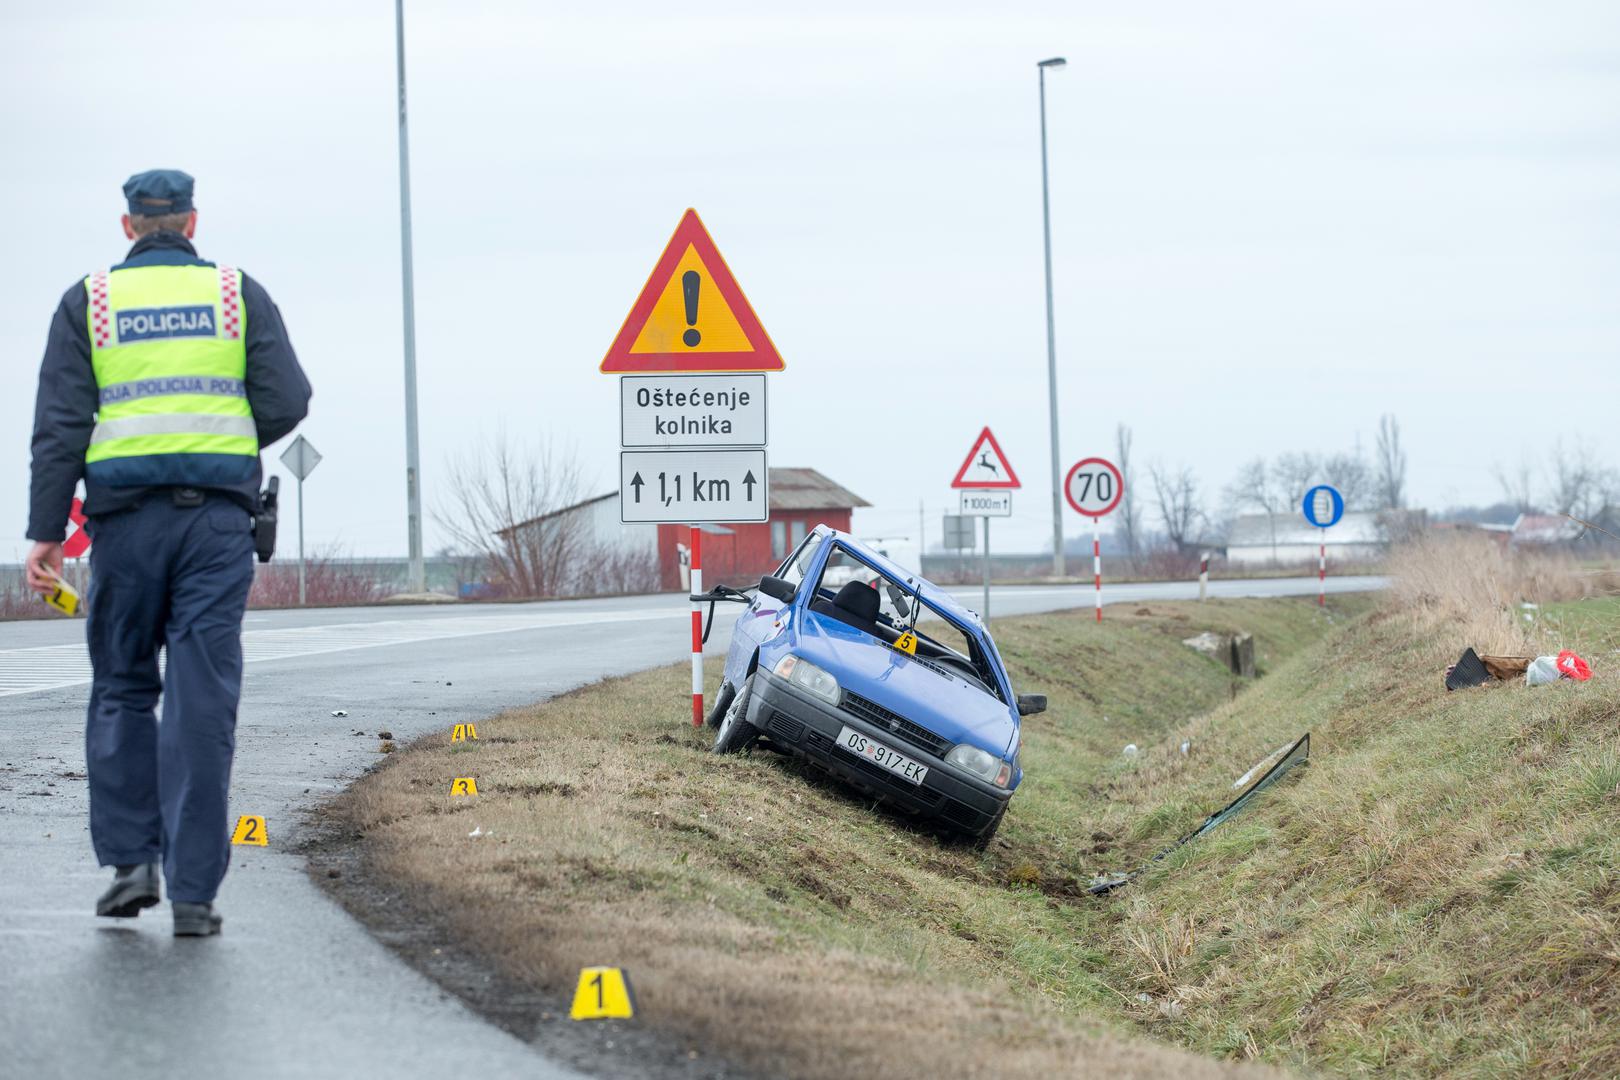 Na državnoj cesti D34 u Petrijevcima nedaleko od Osijeka jedan je vozač izgubio kontrolu nad automobilom i sletio u kanal.